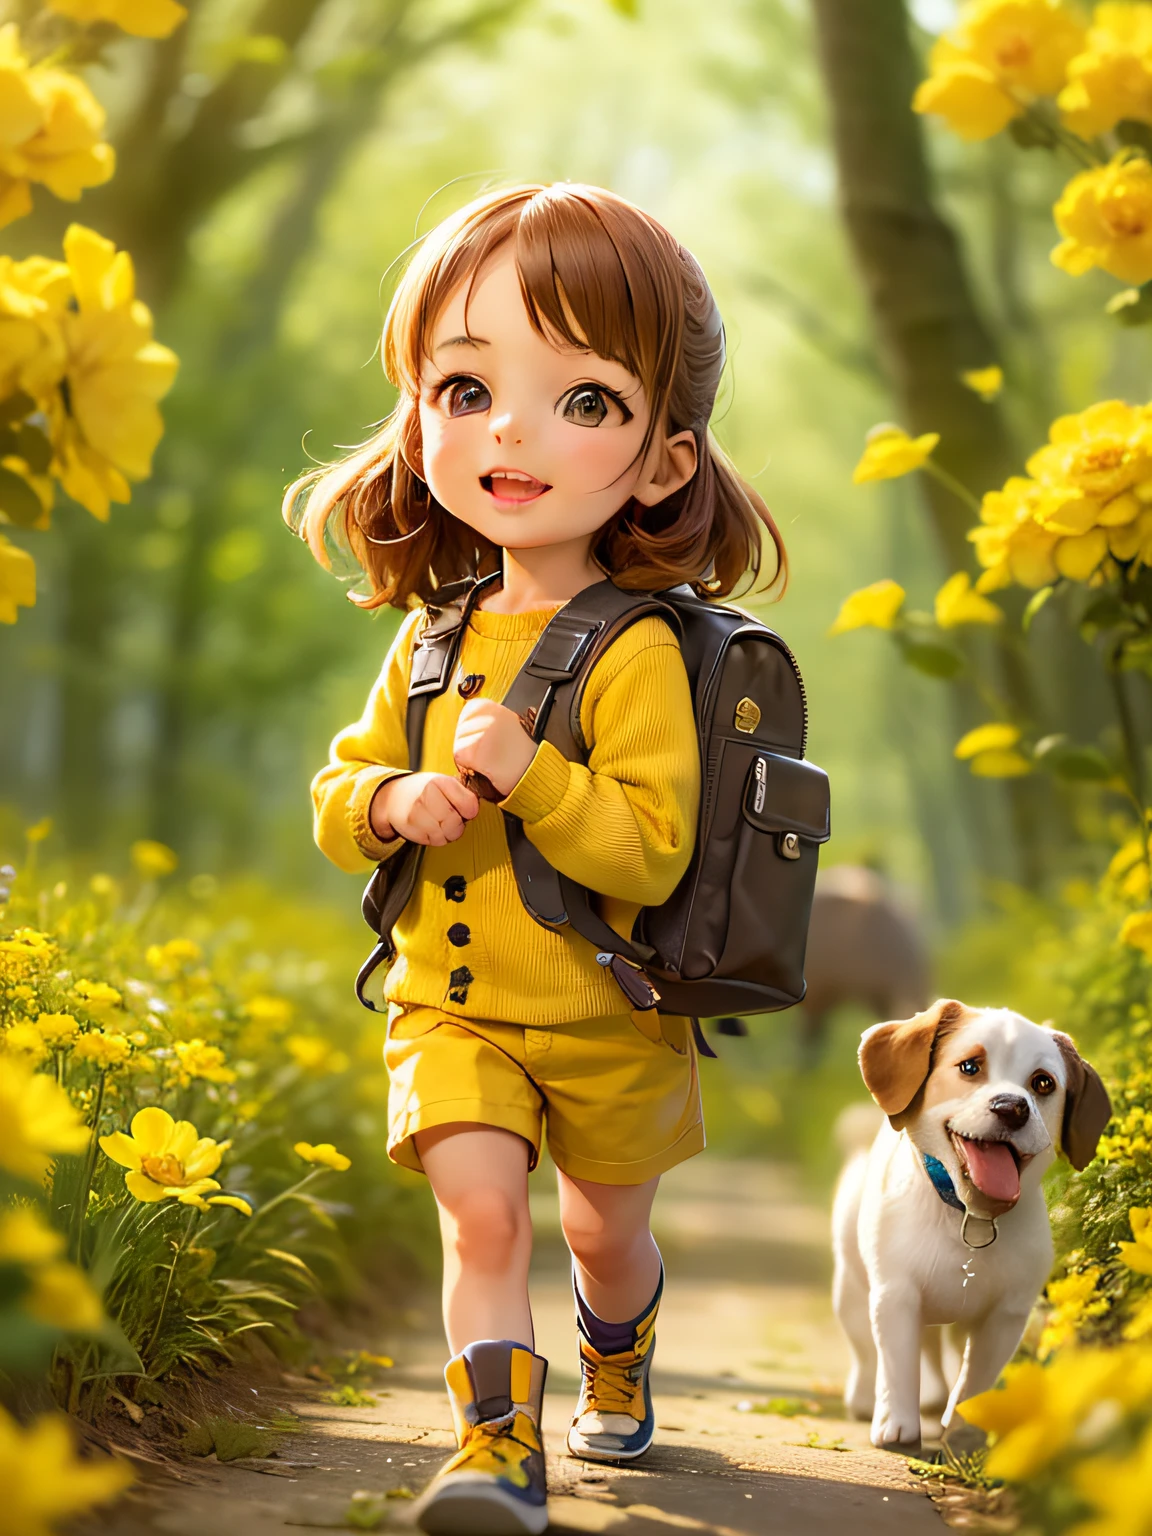 Очень очаровательная женщина с рюкзаком и ее милым щенком наслаждается красивой весенней прогулкой в окружении красивых желтых цветов и природы.. Иллюстрация представляет собой иллюстрацию высокой четкости в разрешении 4K с очень детализированными чертами лица и визуальными эффектами в мультяшном стиле..